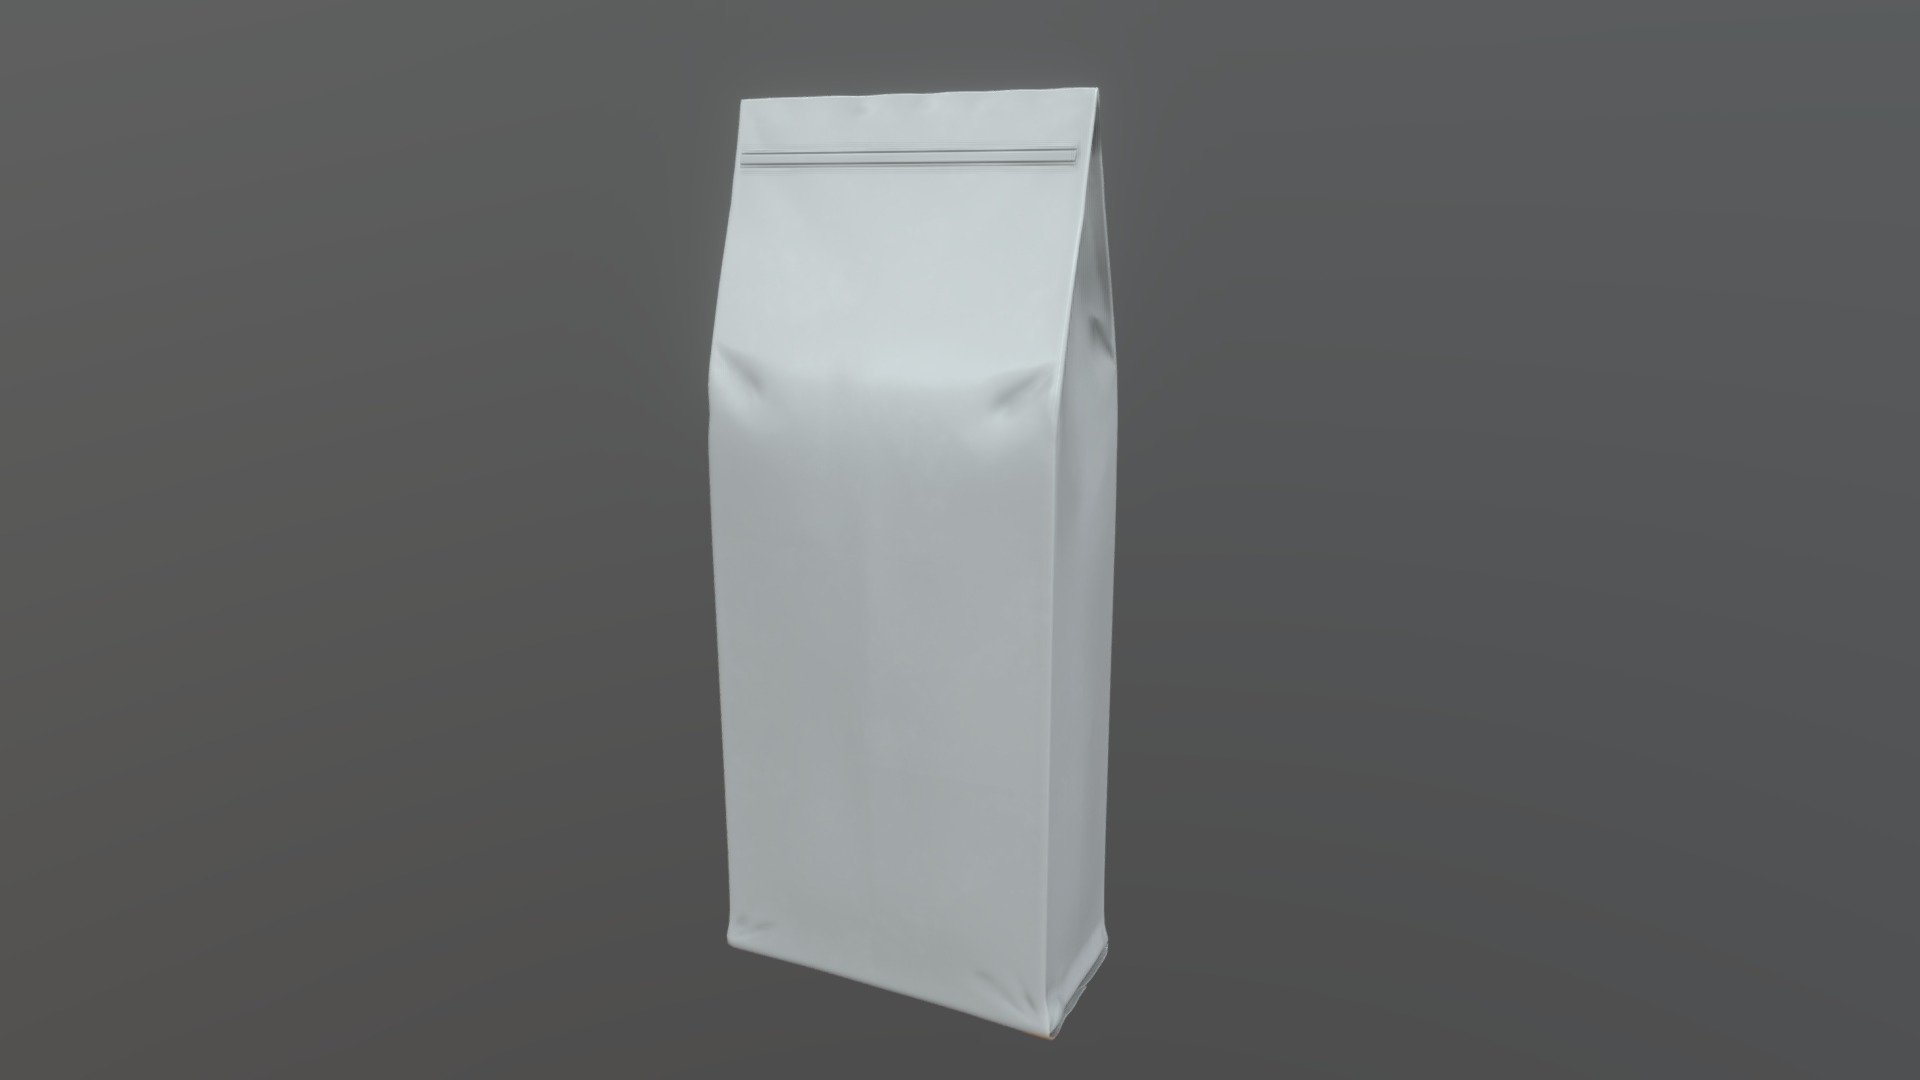 Pack vacuum - Download Free 3D model by Nice2meetU2 [1c7ad72] - Sketchfab